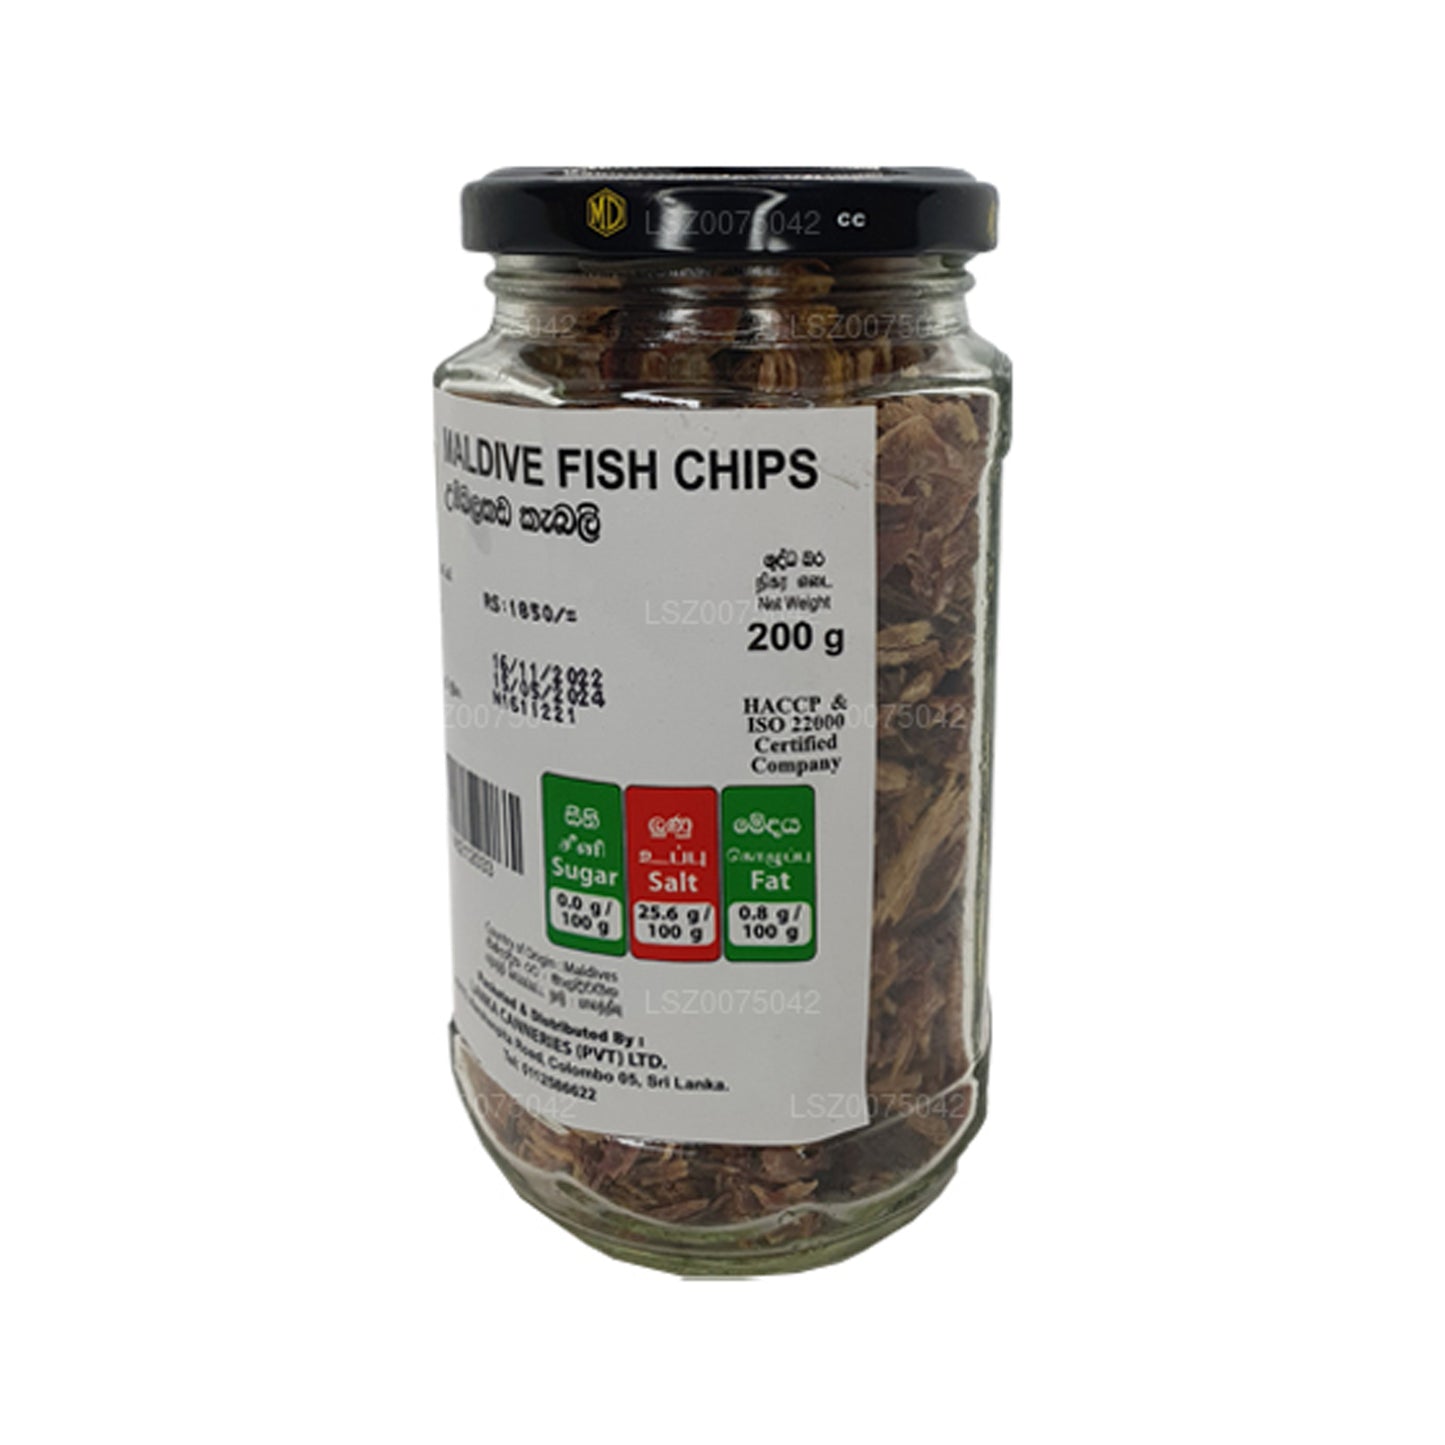 Bouteille de chips de poisson MD Maldive (200 g)